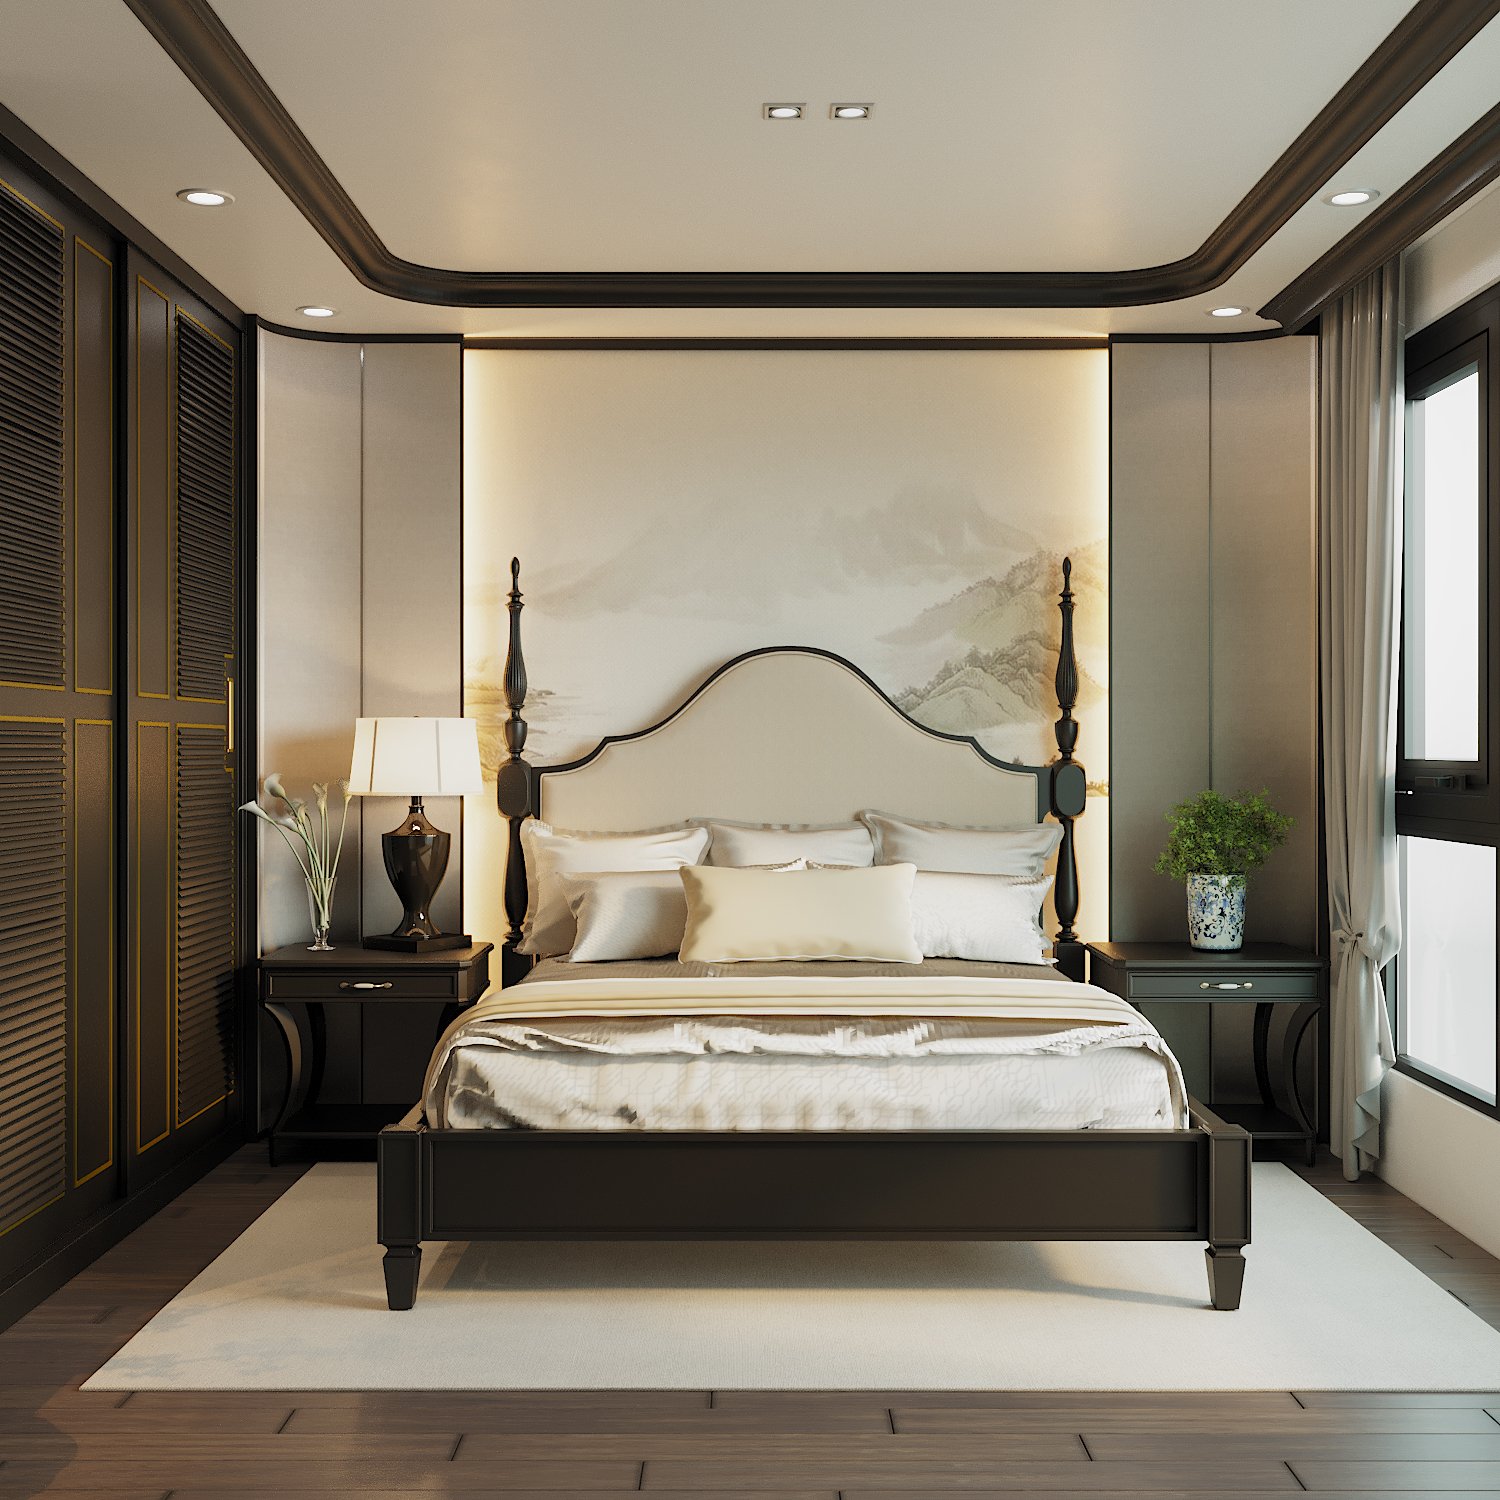 Giường và mảng tường decor đầu giường trở thành điểm nhấn cực hút mắt cho phòng ngủ master. Lối bài trí đối xứng không hề nặng nề, mô phạm như kiểu nội thất xưa cũ.